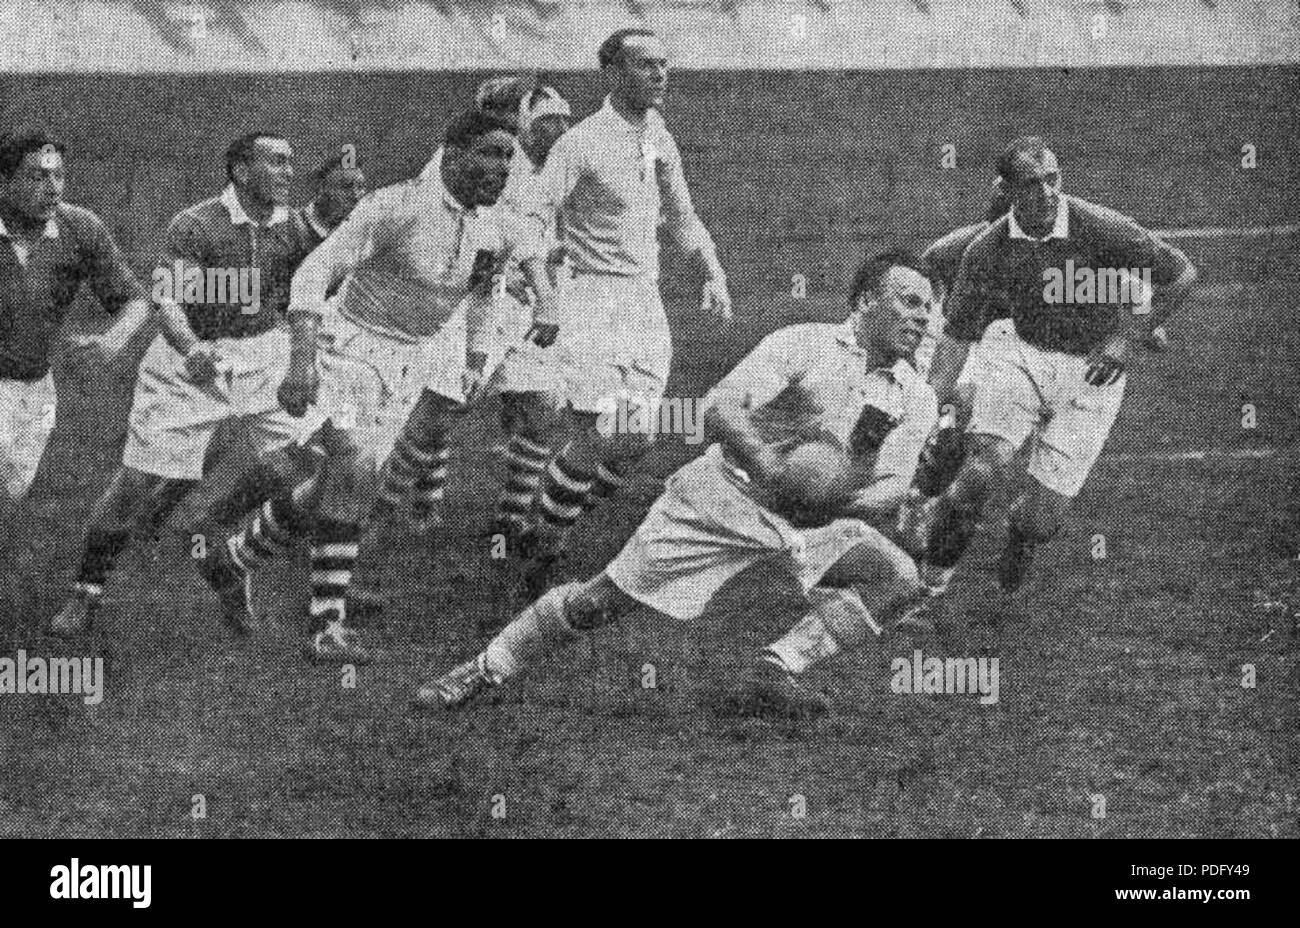 130 Finale de la Coupe de France de rugby à XV 1937, victoire de Languedoc-Roussillon (foncé) sur Côte basque (en blanc) Stock Photo